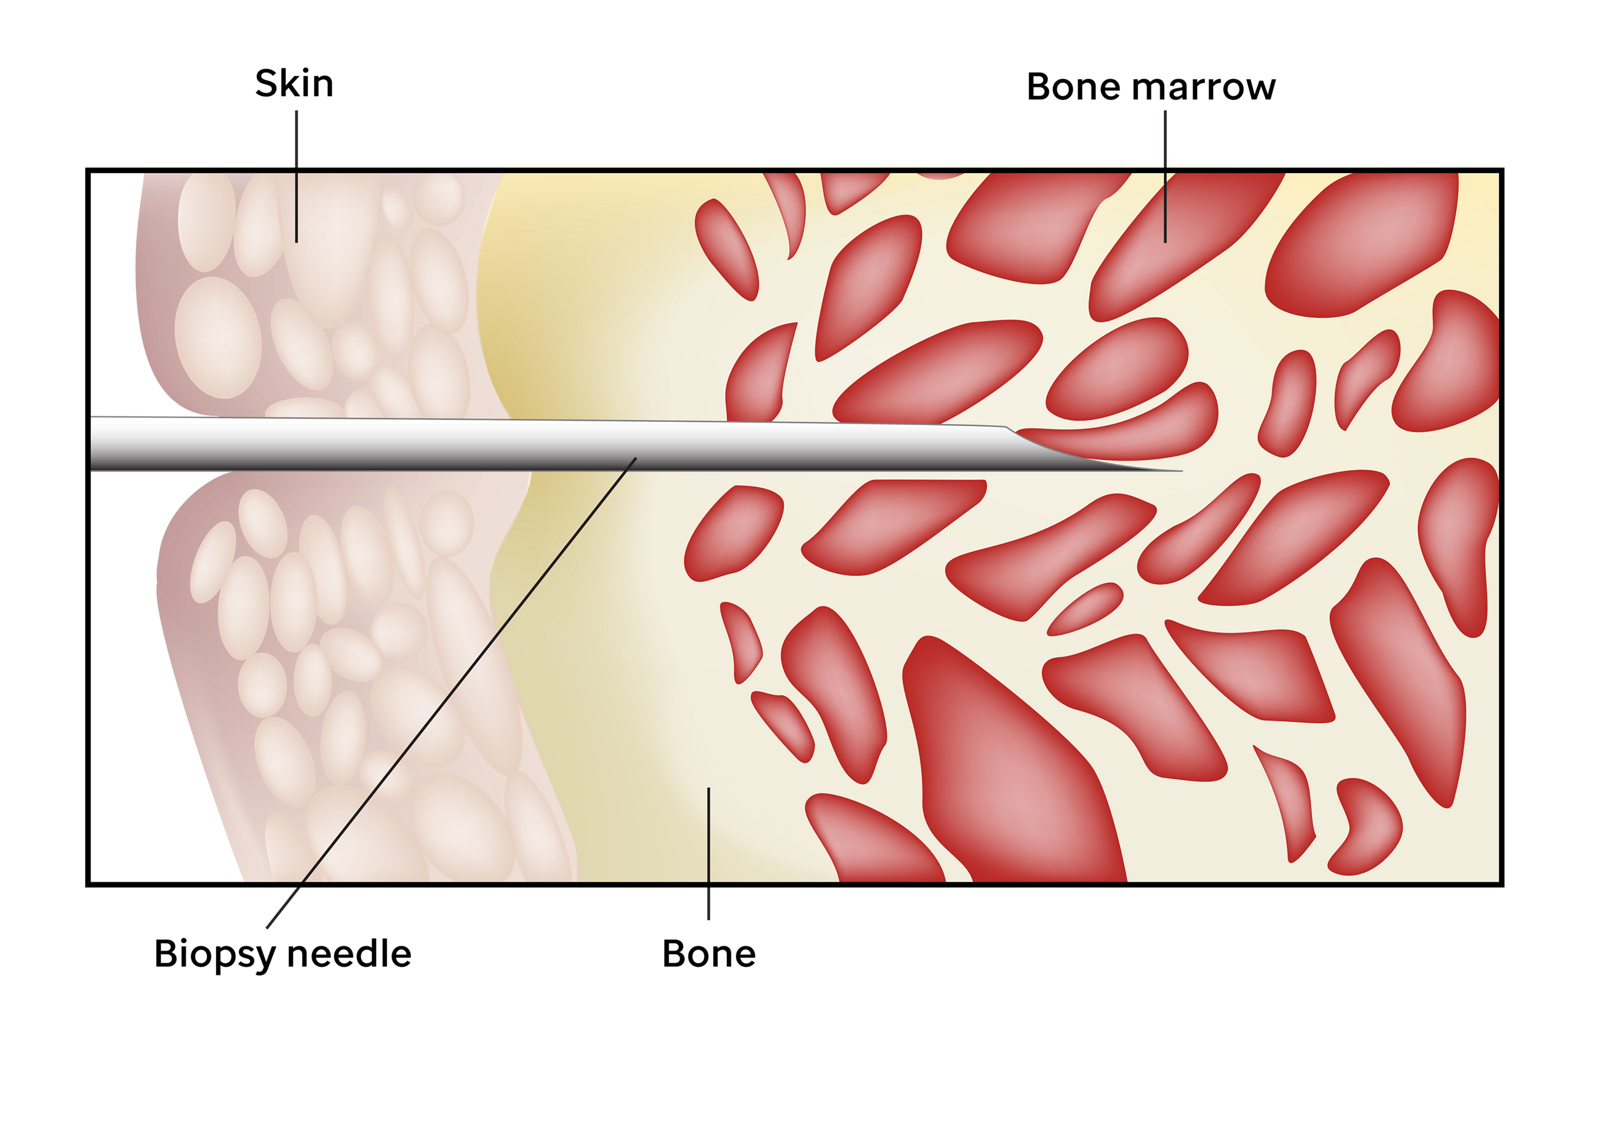 На изображении показана игла для биопсии, введенная через кожу в кость для взятия образца костного мозга